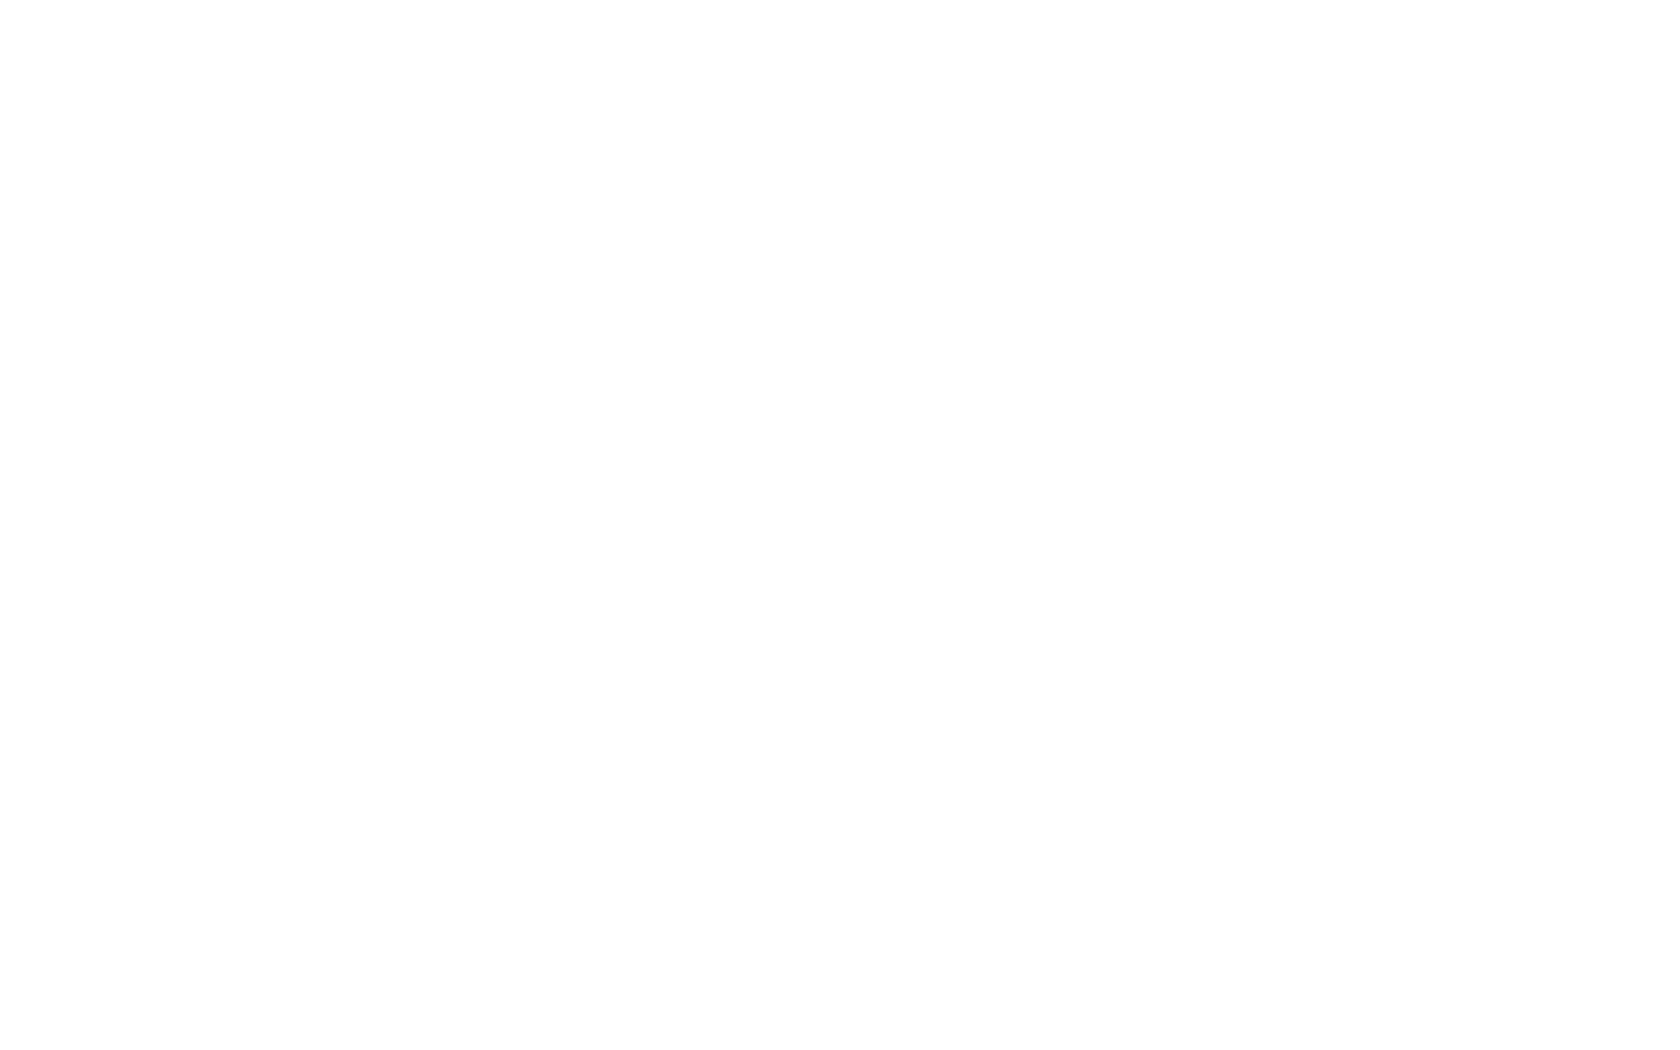 Дизайн логотипа и упаковки консервов Рыбный Четверг. Брендинговое агентство Force Gear.